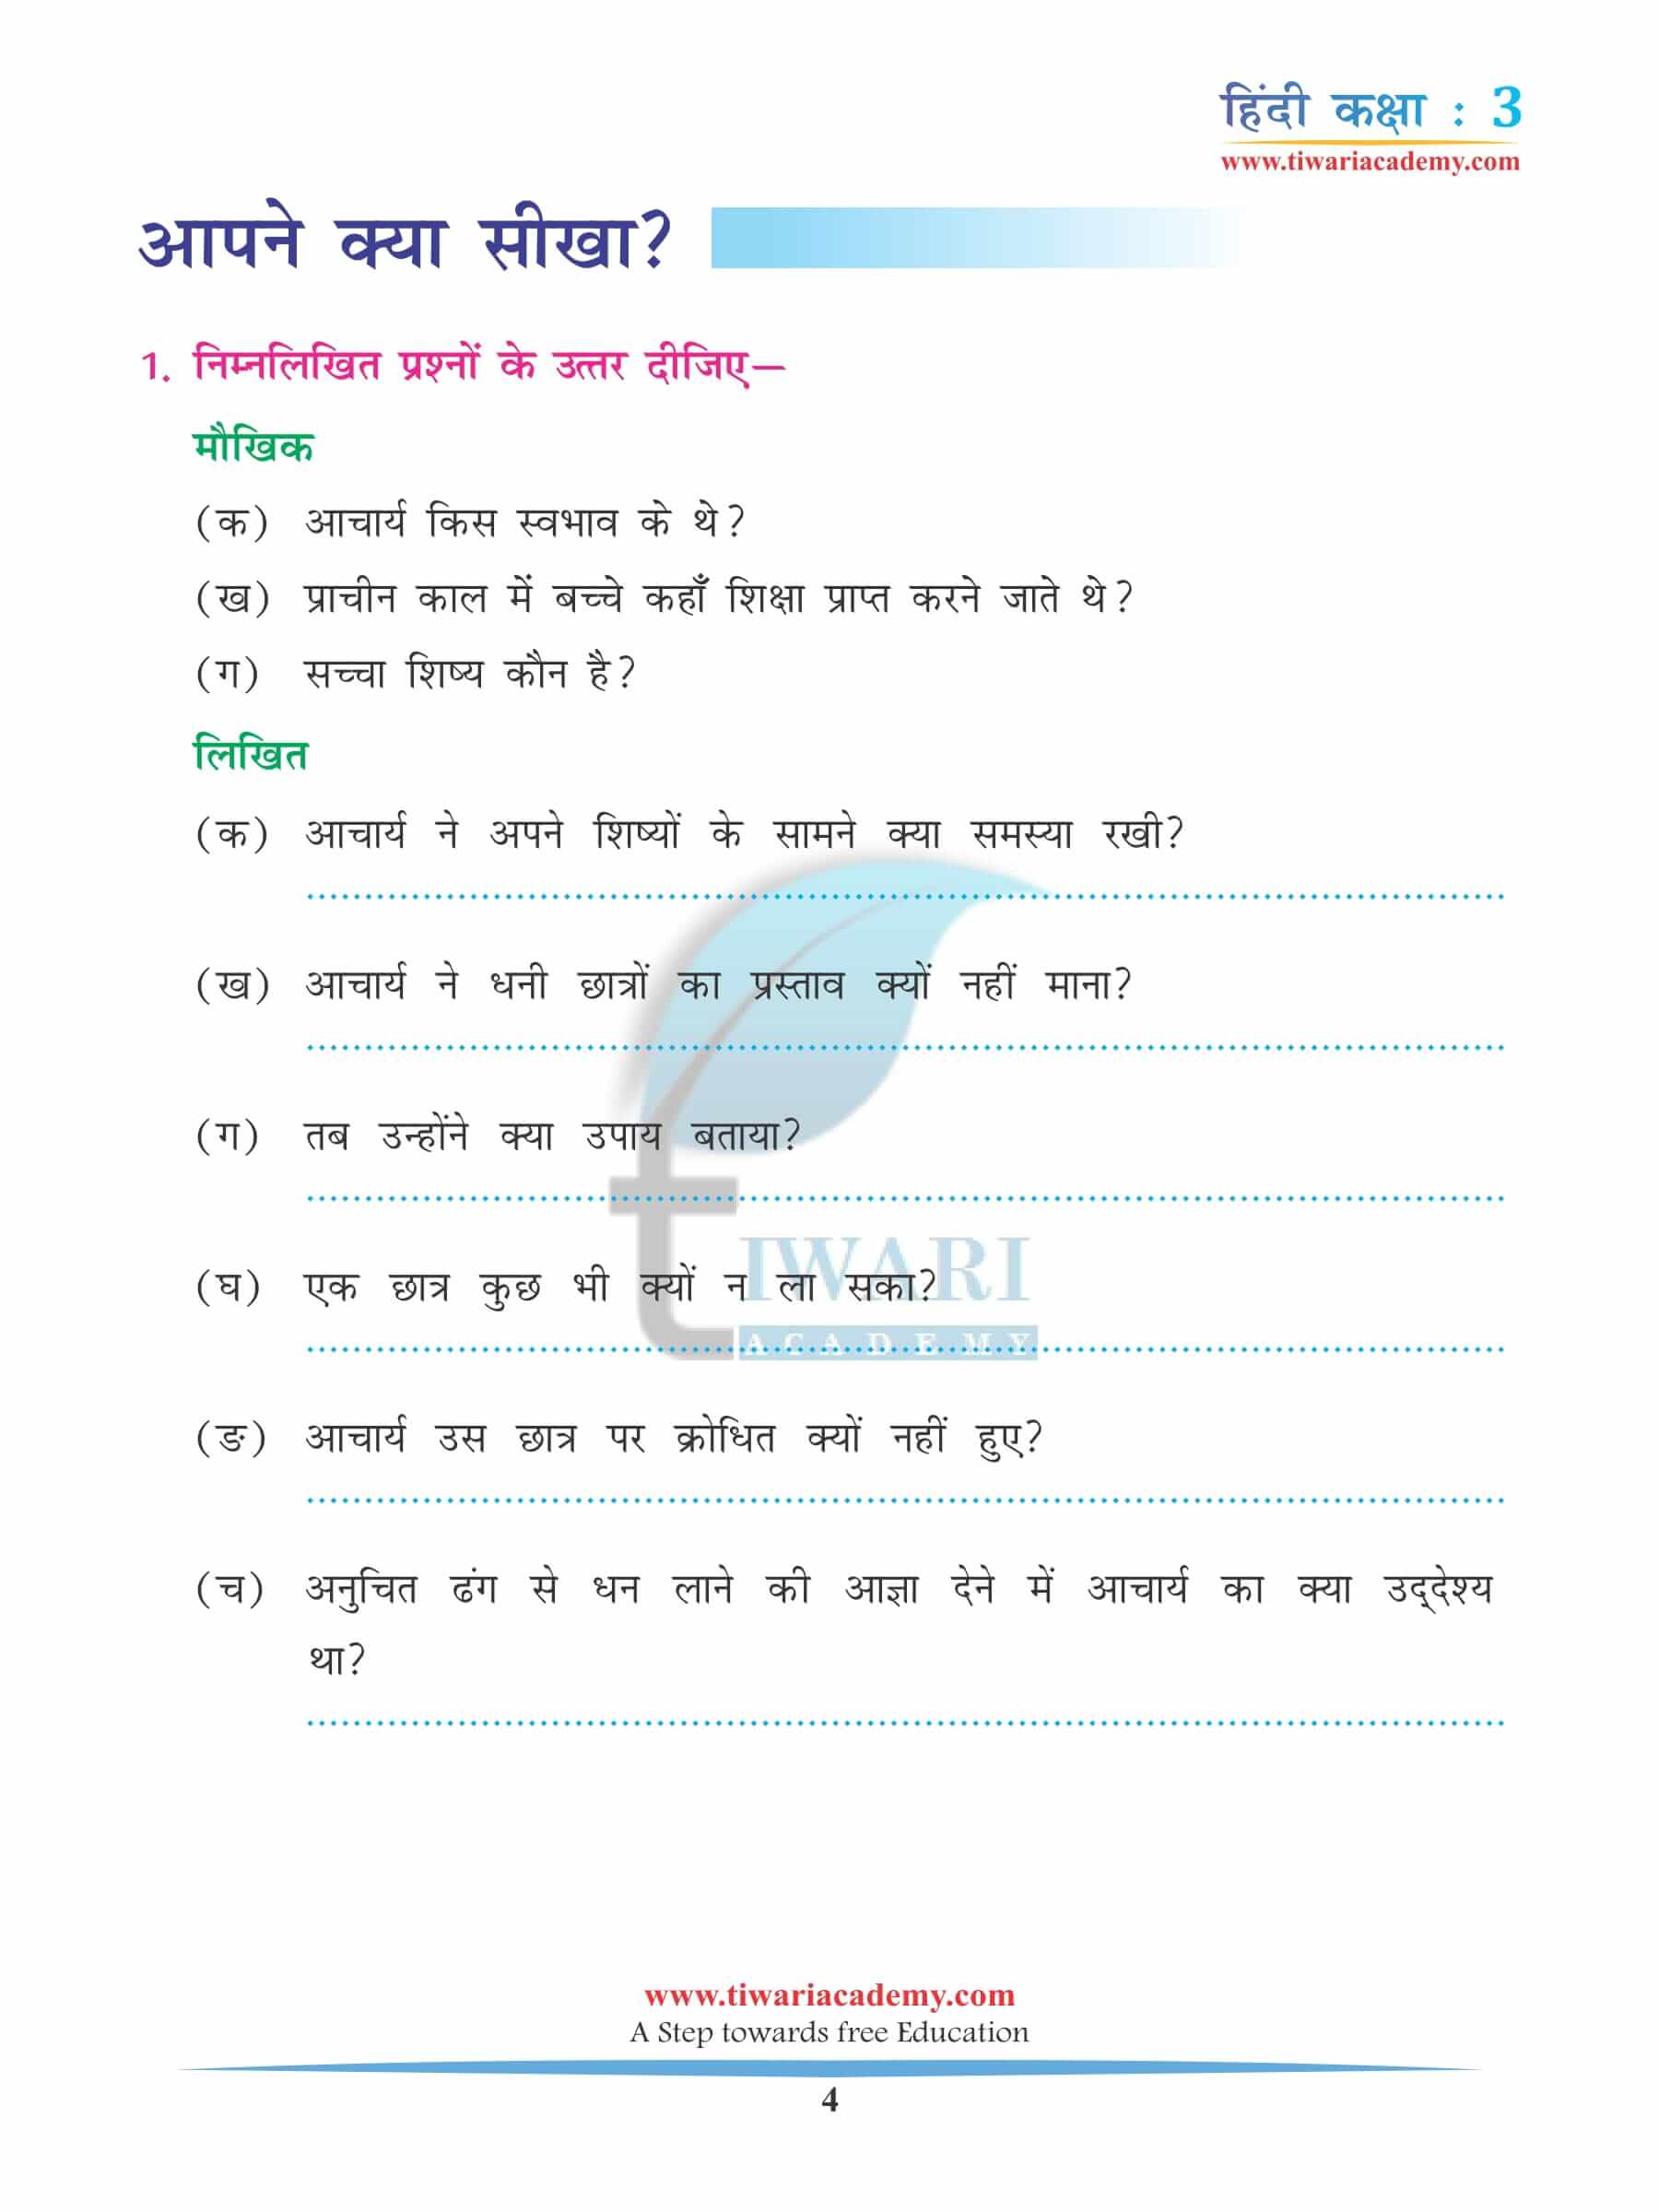 कक्षा 3 हिंदी अध्याय 11 अभ्यास के प्रश्न